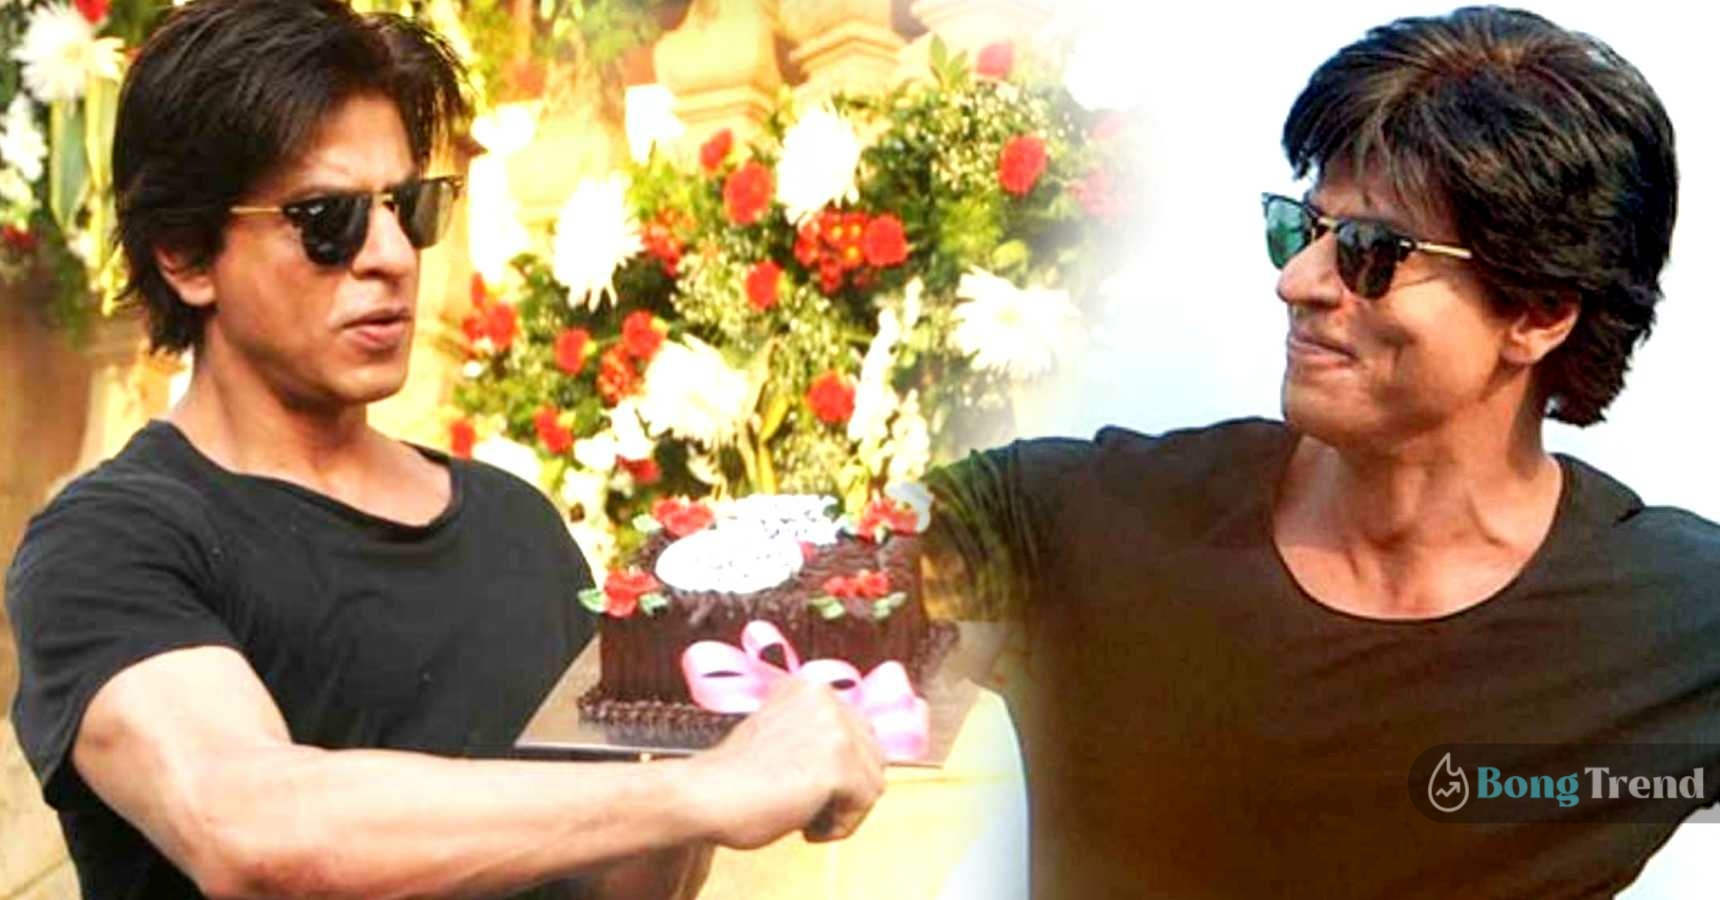 বলিউড,Bollywood,শাহরুখ খান,Shahrukh Khan,জন্মদিন,Birthday,উদযাপন,Celebration